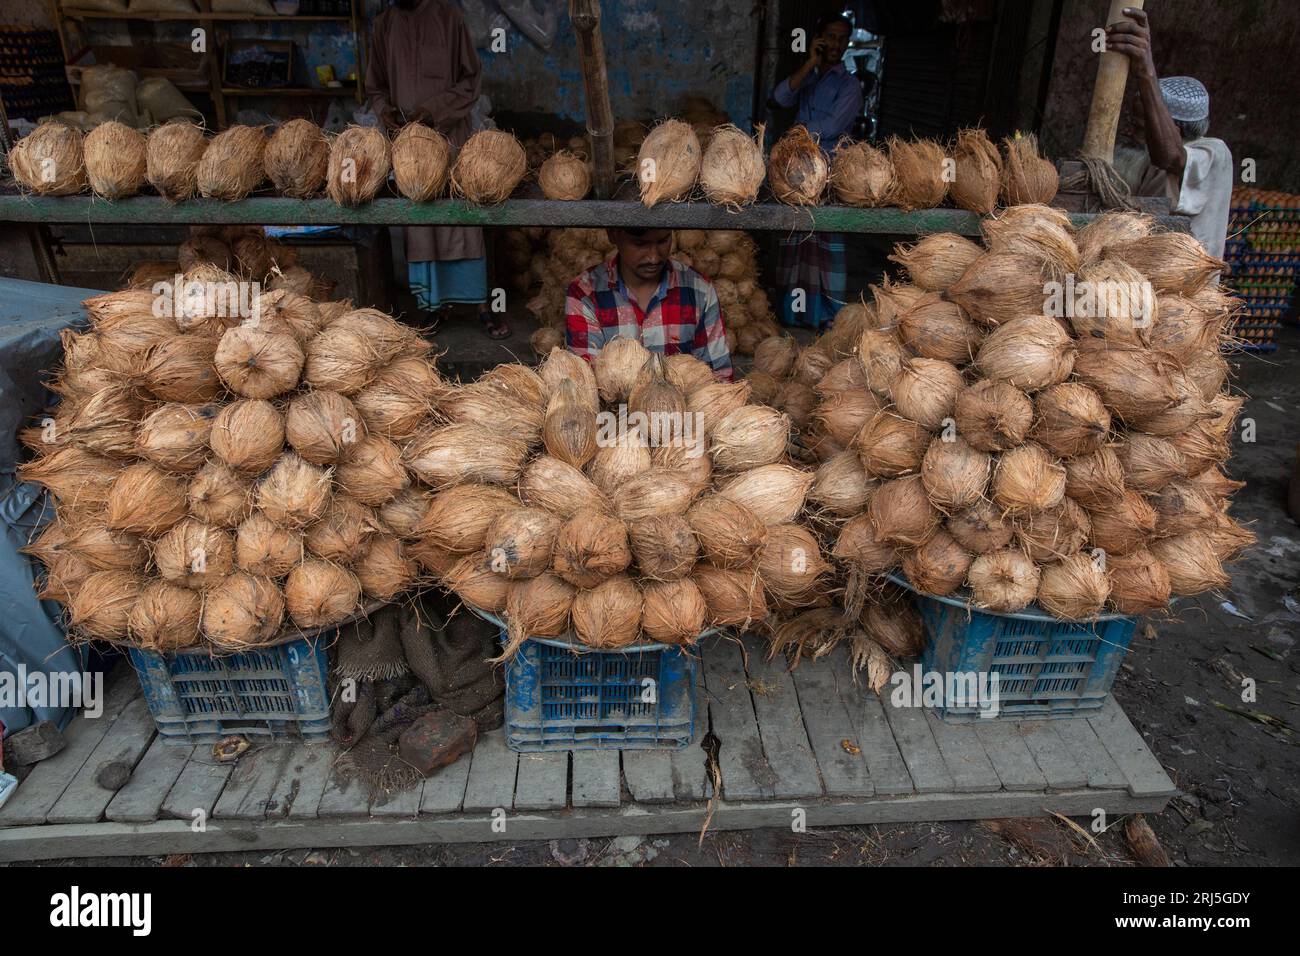 Vendeur de noix de coco au marché de Jurain Railgate où environ 600 colporteurs dirigent leurs entreprises sur les voies ferrées. Les fournisseurs retirent les capots de Banque D'Images